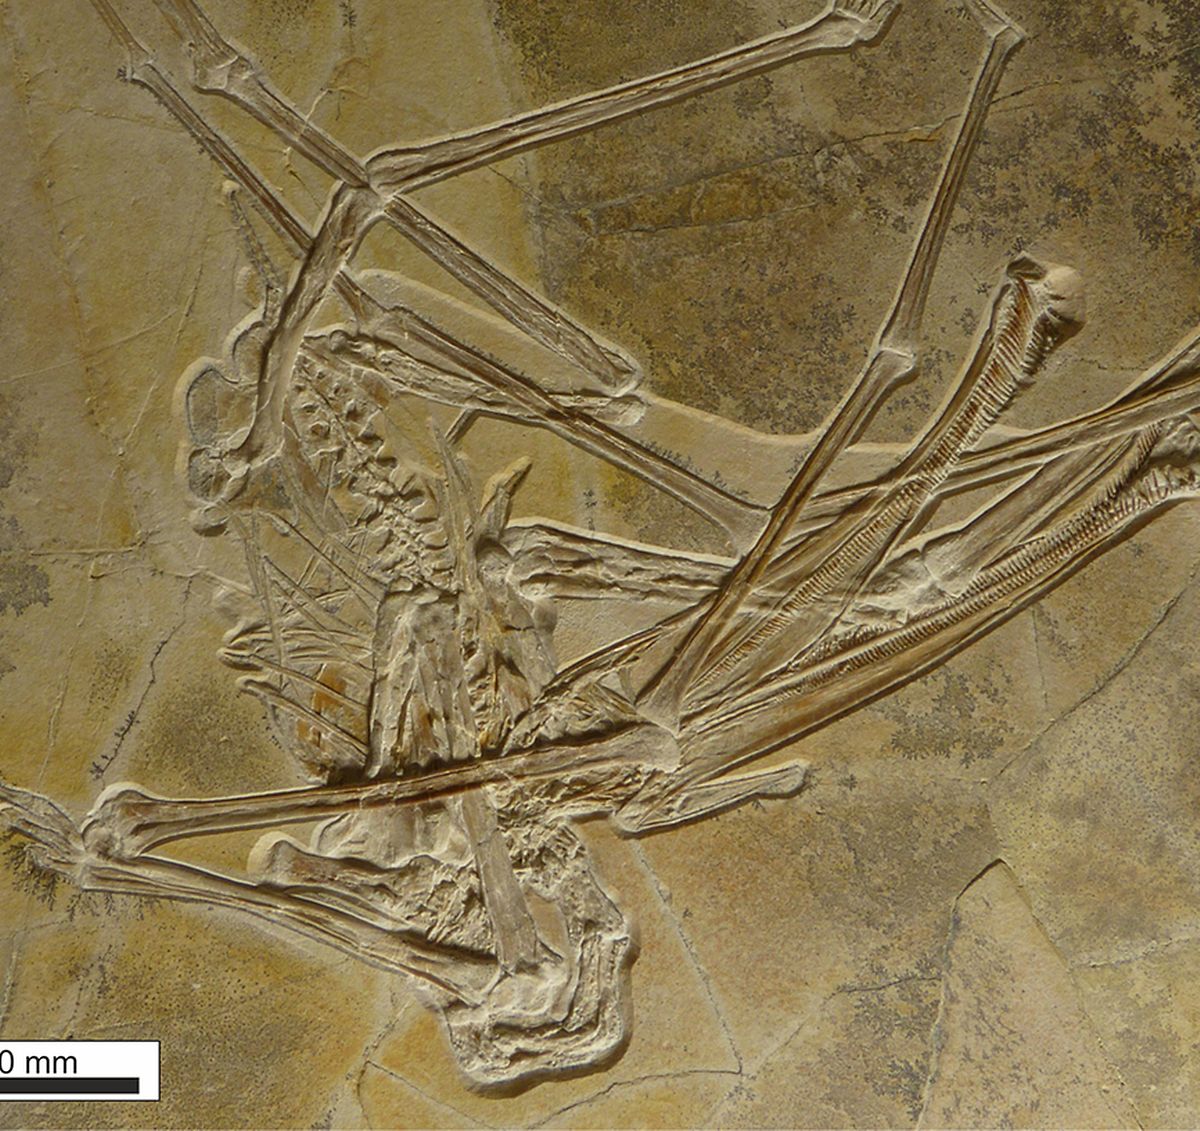 Das Fossil des Flugsauriers ist im Naturkundemuseum Bamberg zu sehen.